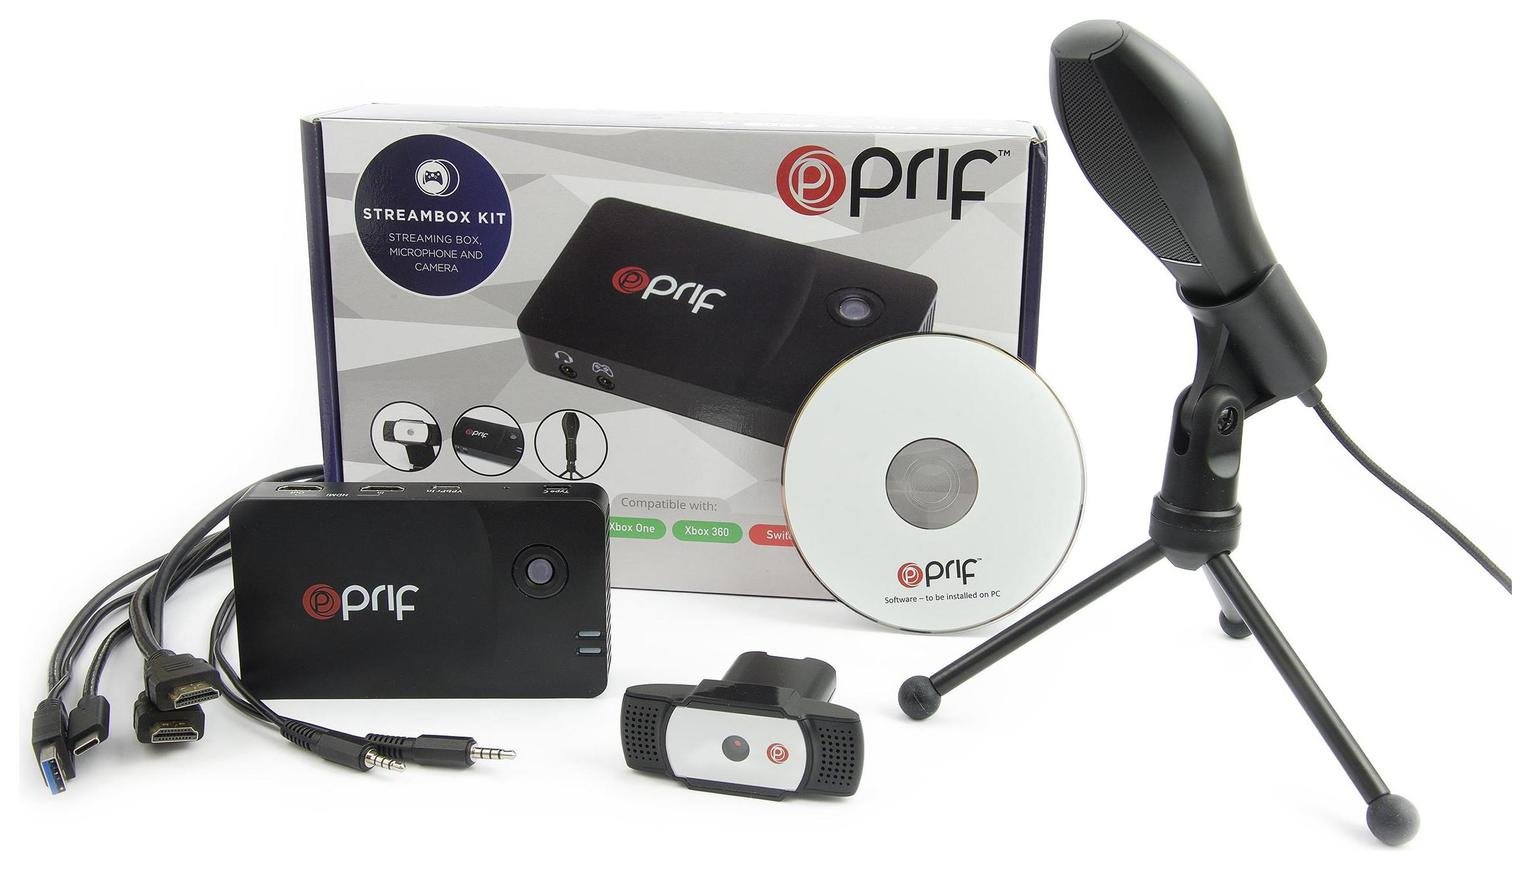 Prif Gaming Streambox Kit